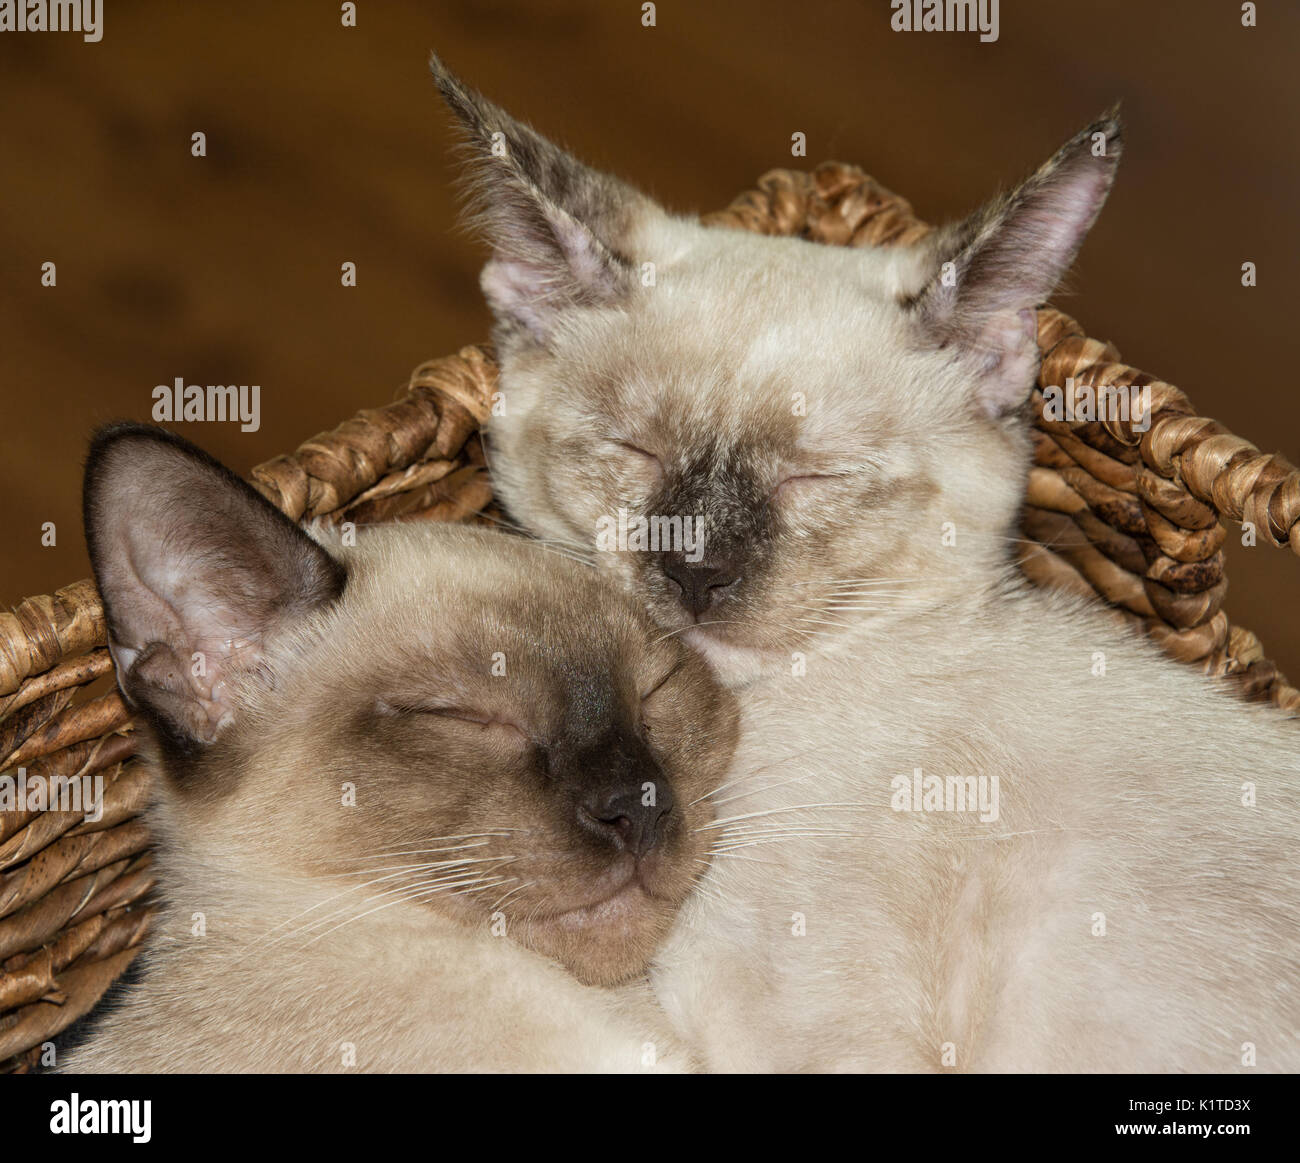 Libre de deux chatons siamois, endormi, se blottissant dans un panier marron Banque D'Images